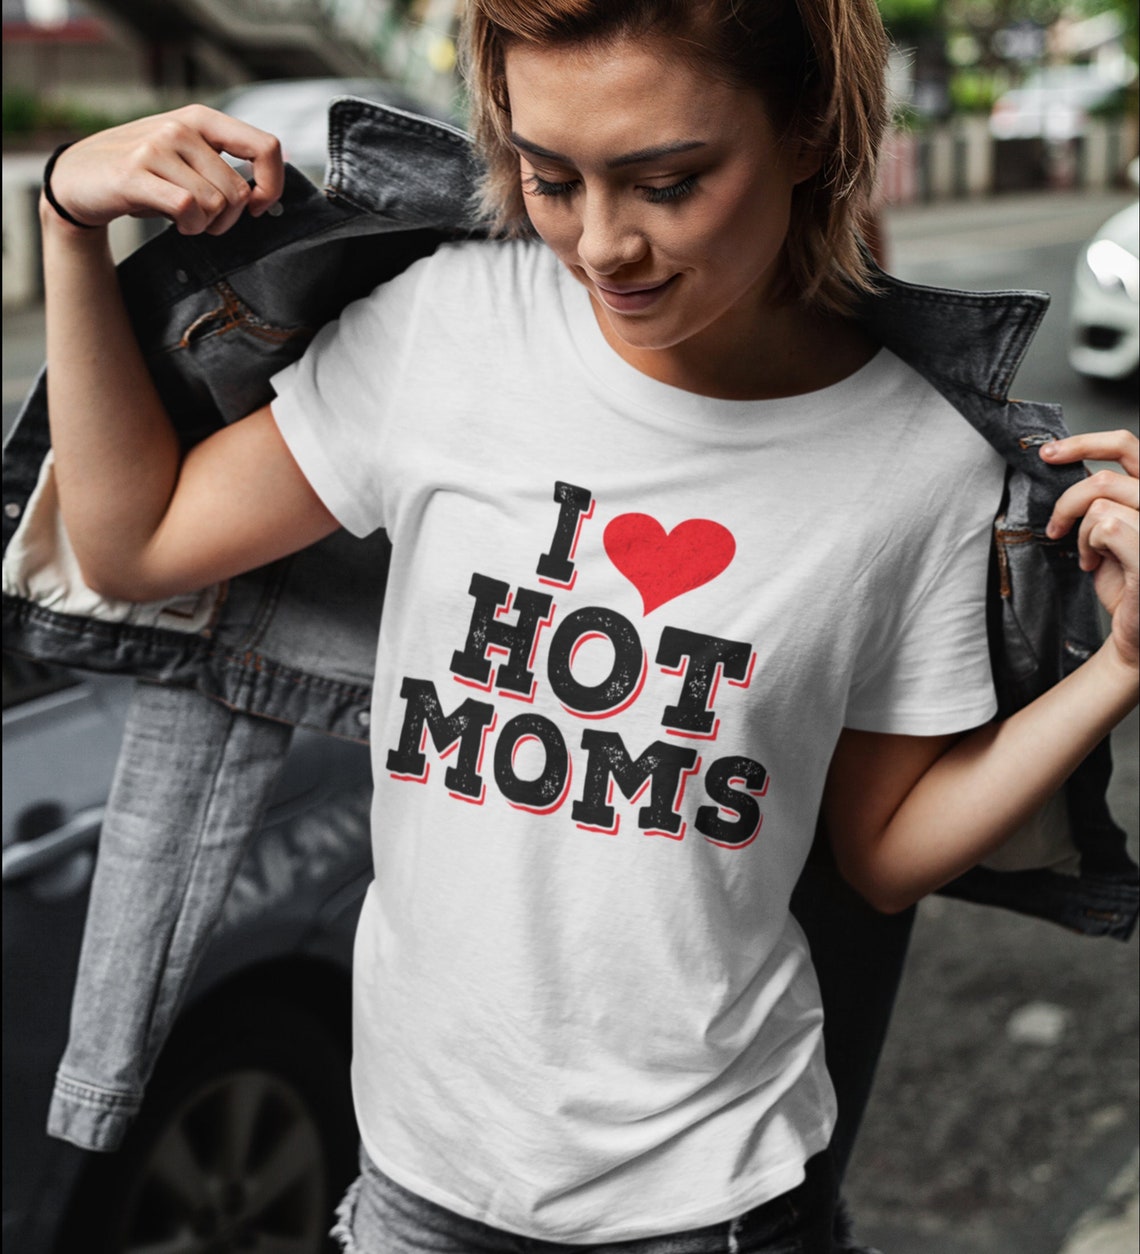 I Love Hot Moms Shirt, I Heart Hot Moms Tee